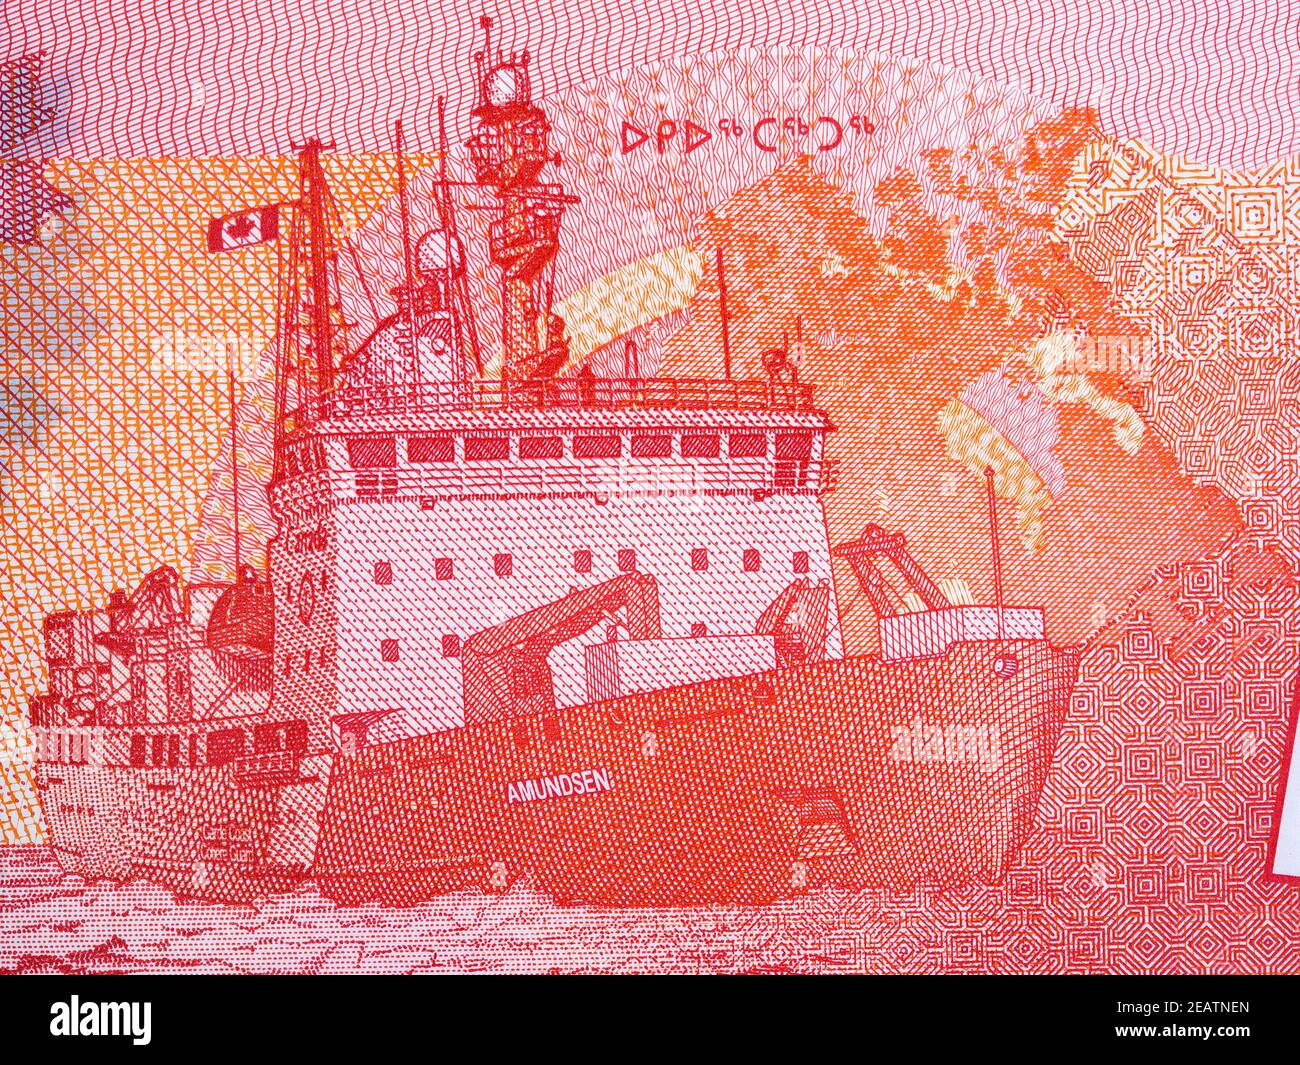 La Guardia Costera Canadiense Ship Amundsen en el Ártico, con dinero canadiense Foto de stock